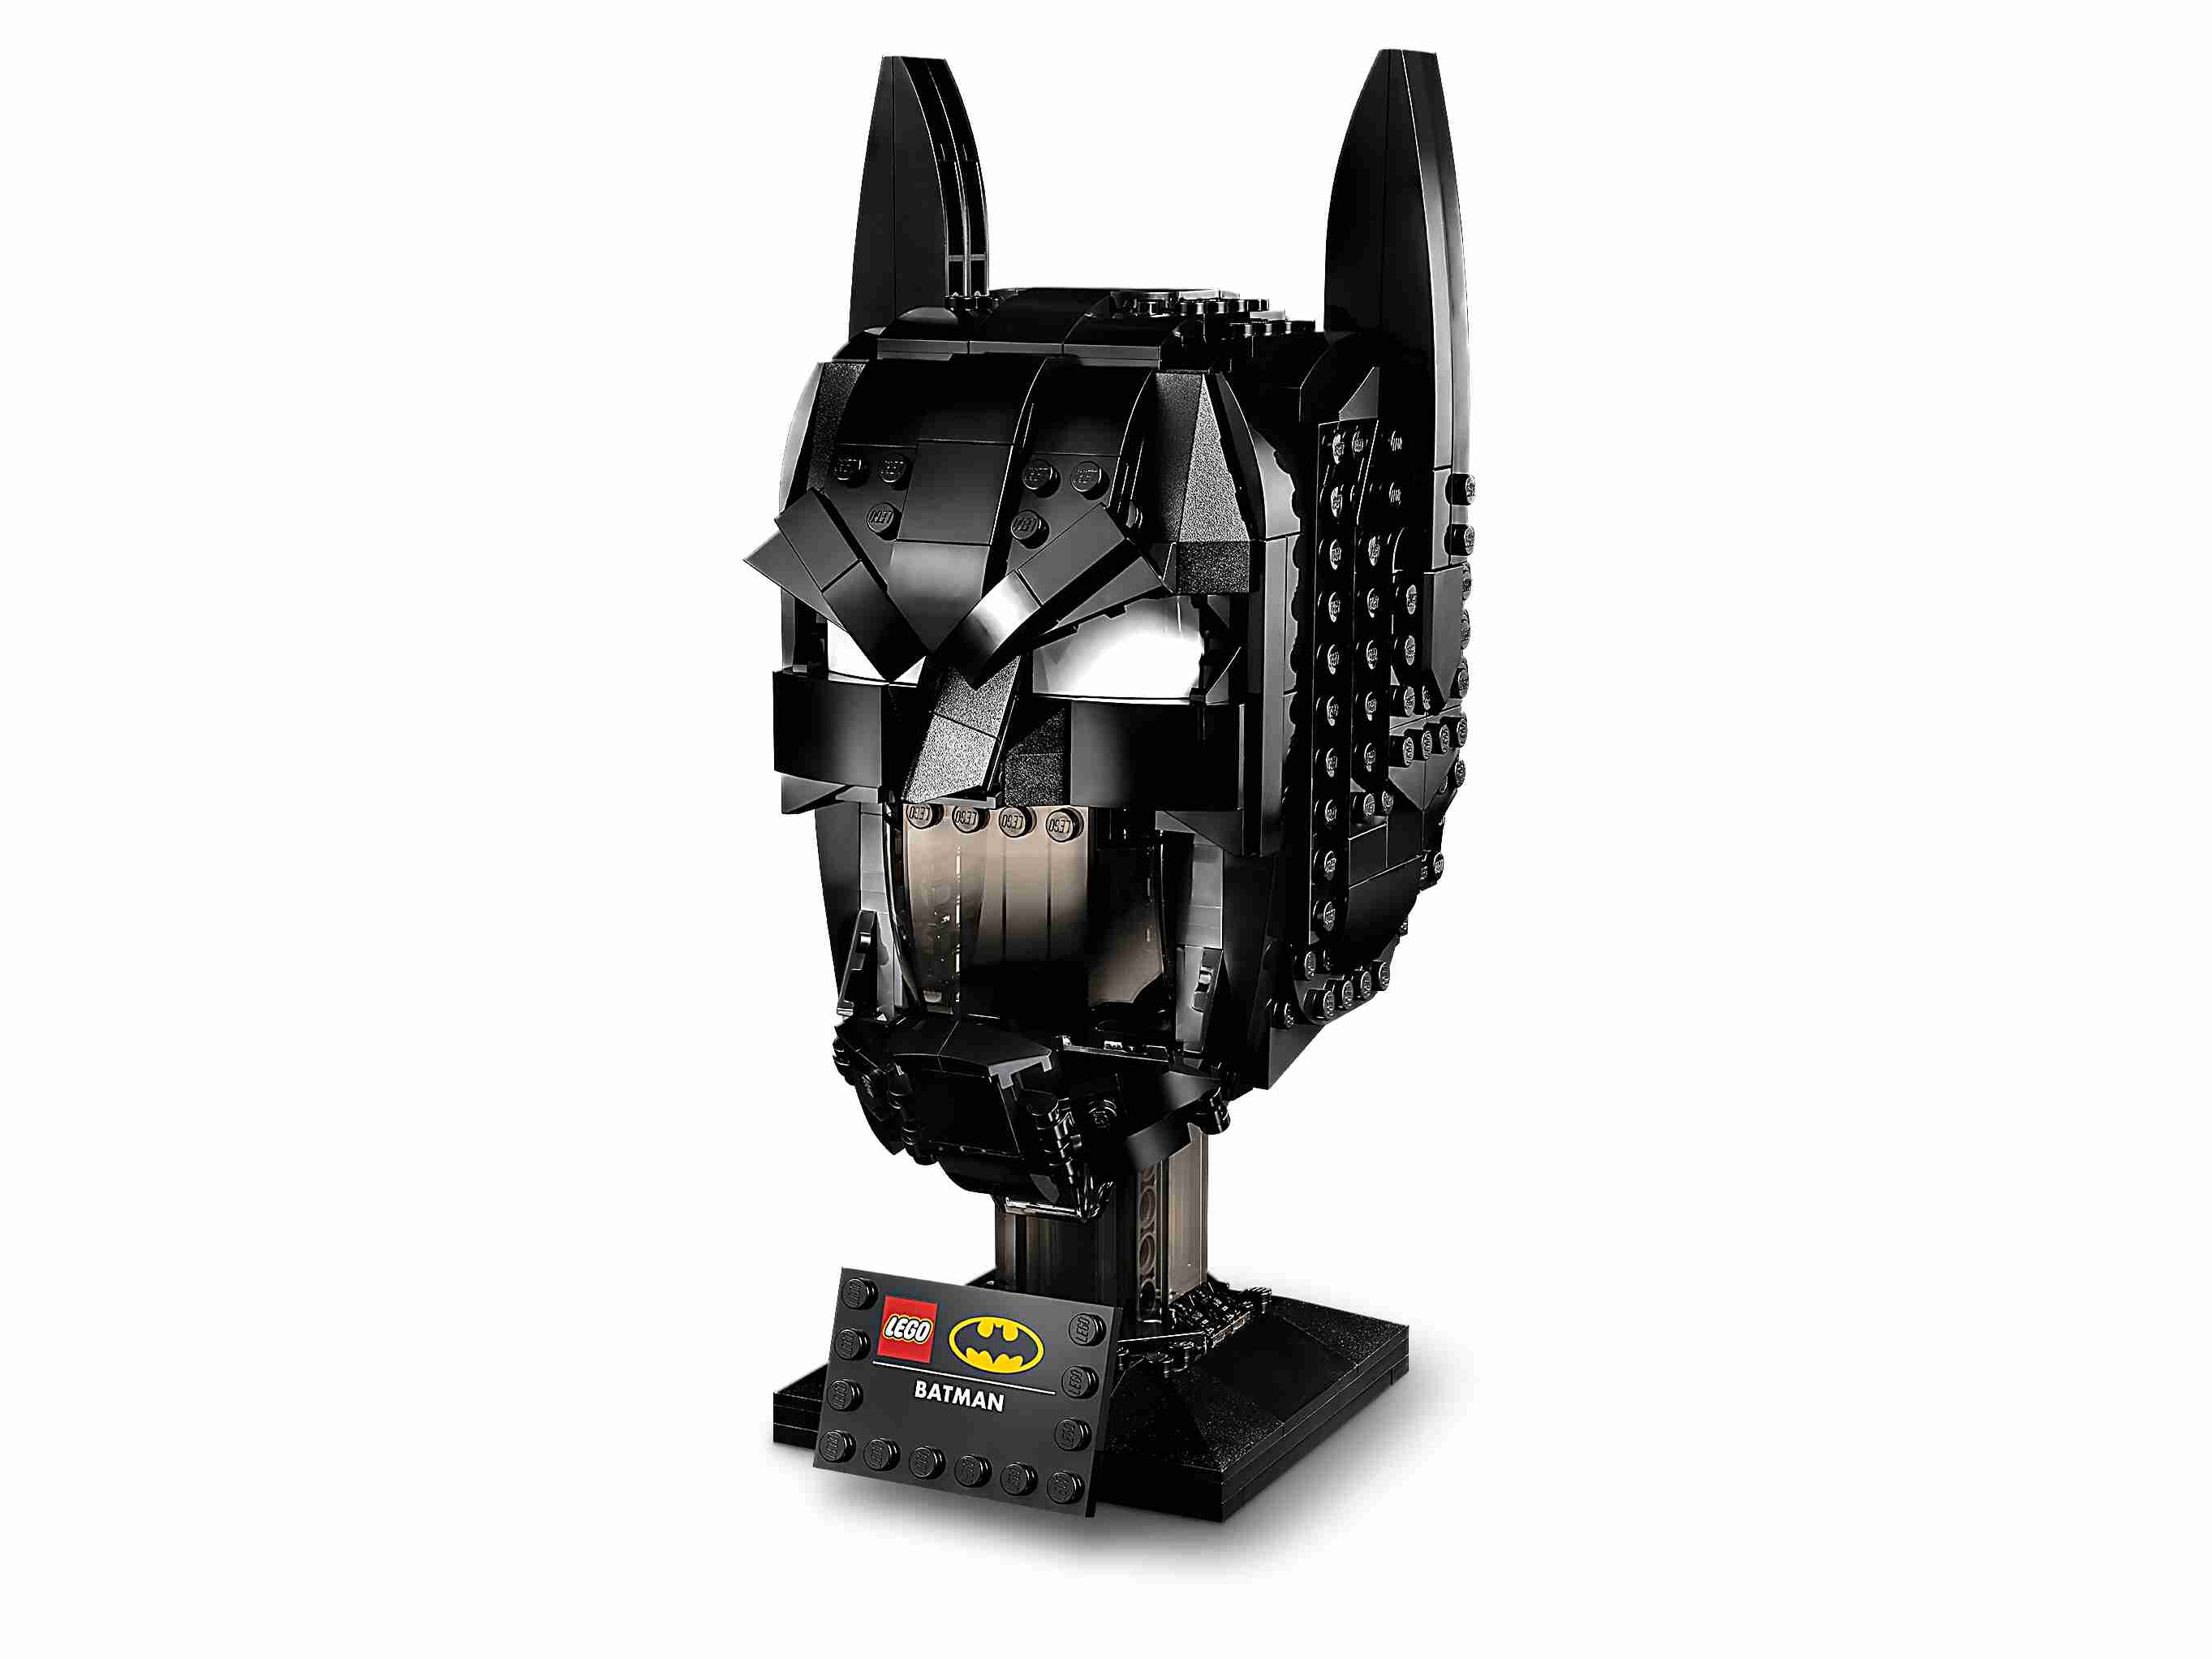 LEGO 76182 DC Batman Helm Bauset für Erwachsene, Modellbausatz für Sammler